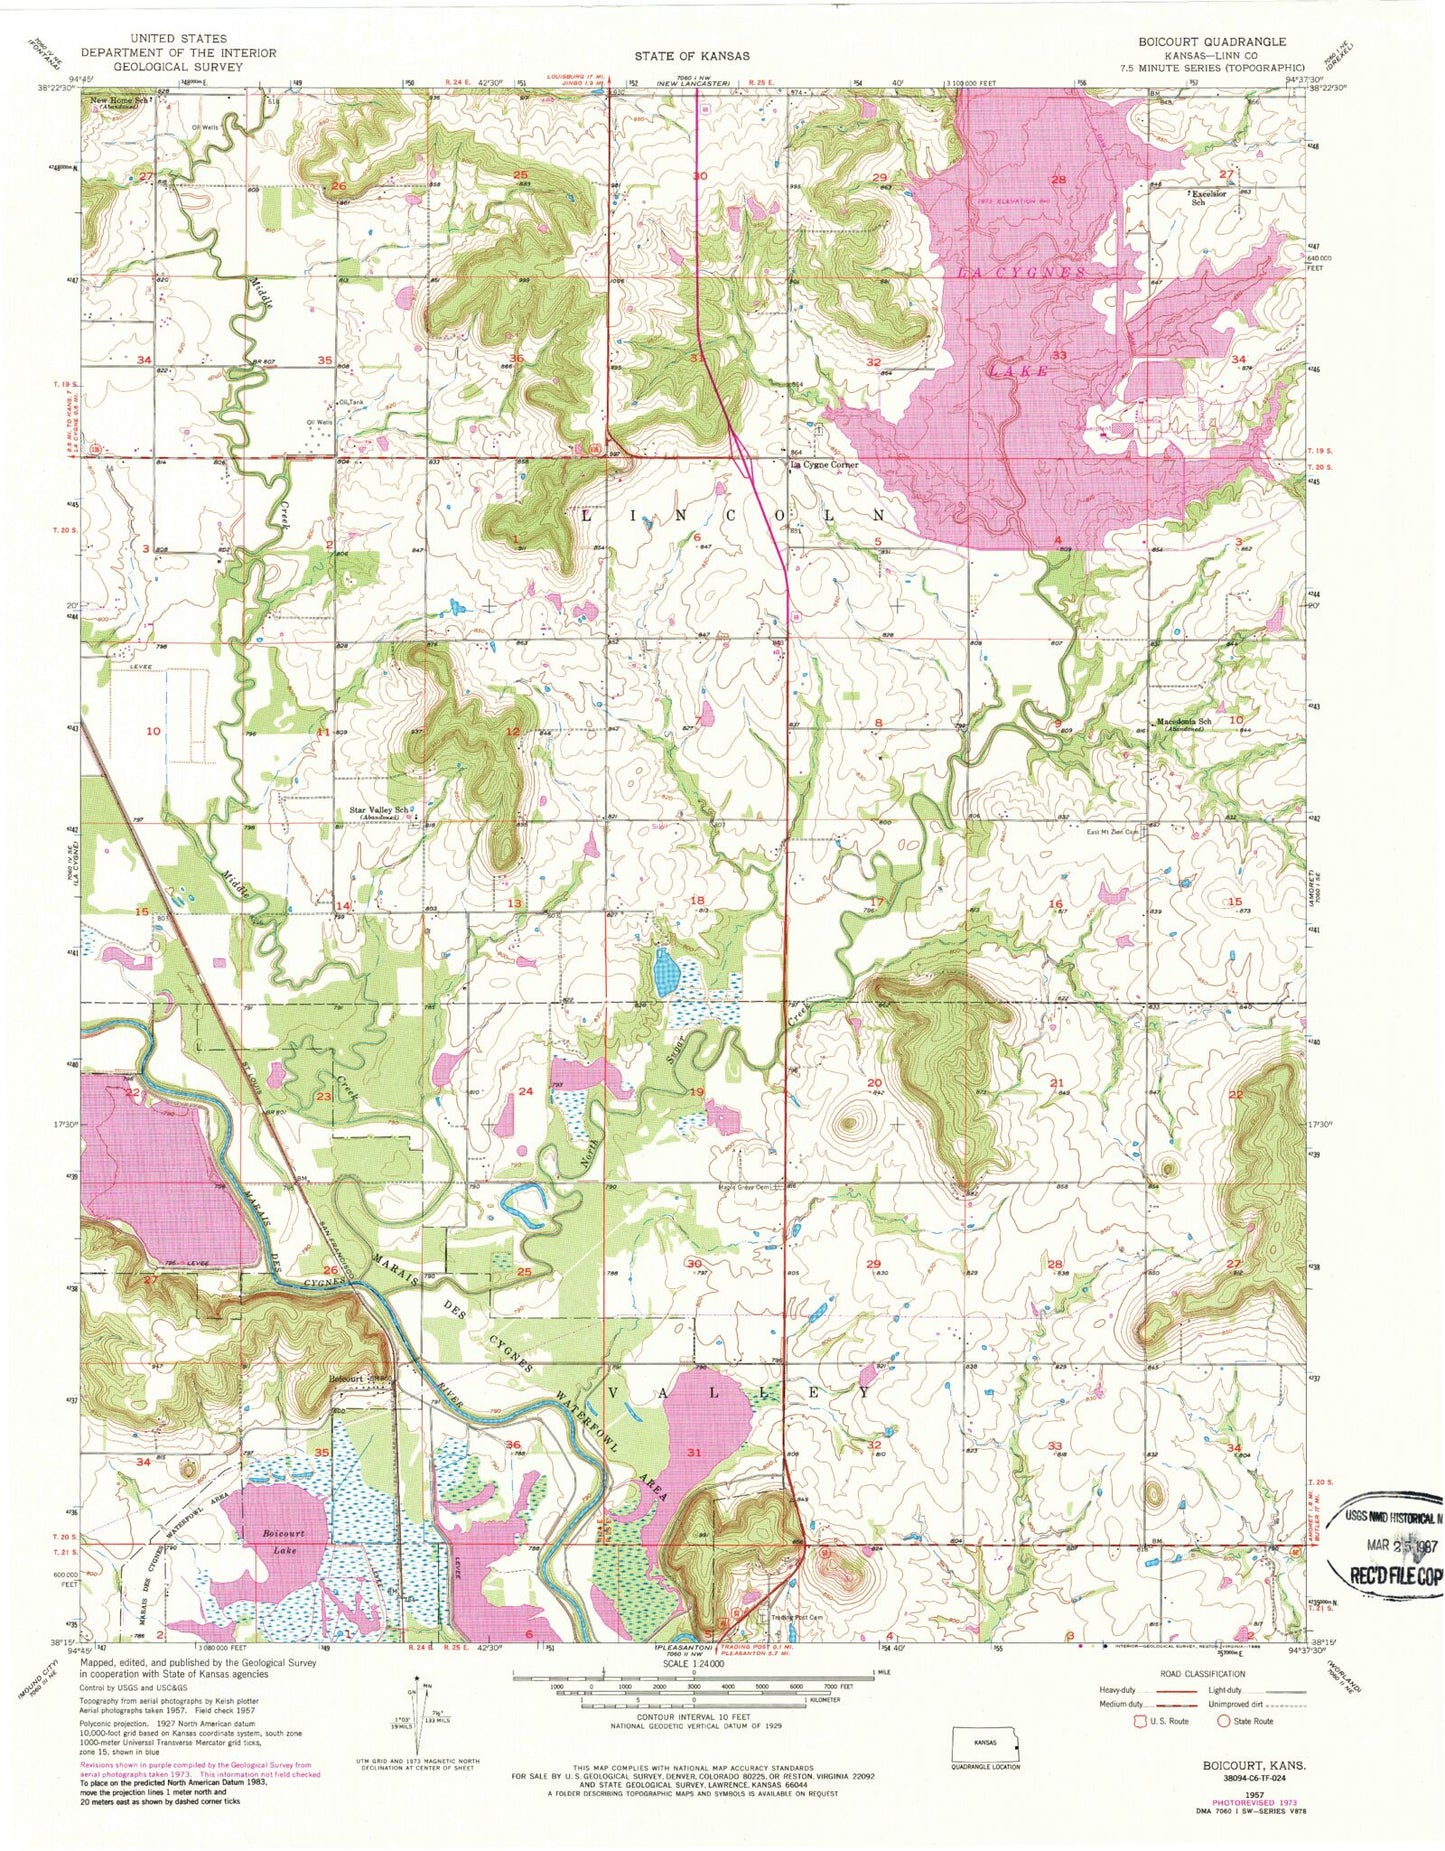 Classic USGS Boicourt Kansas 7.5'x7.5' Topo Map Image